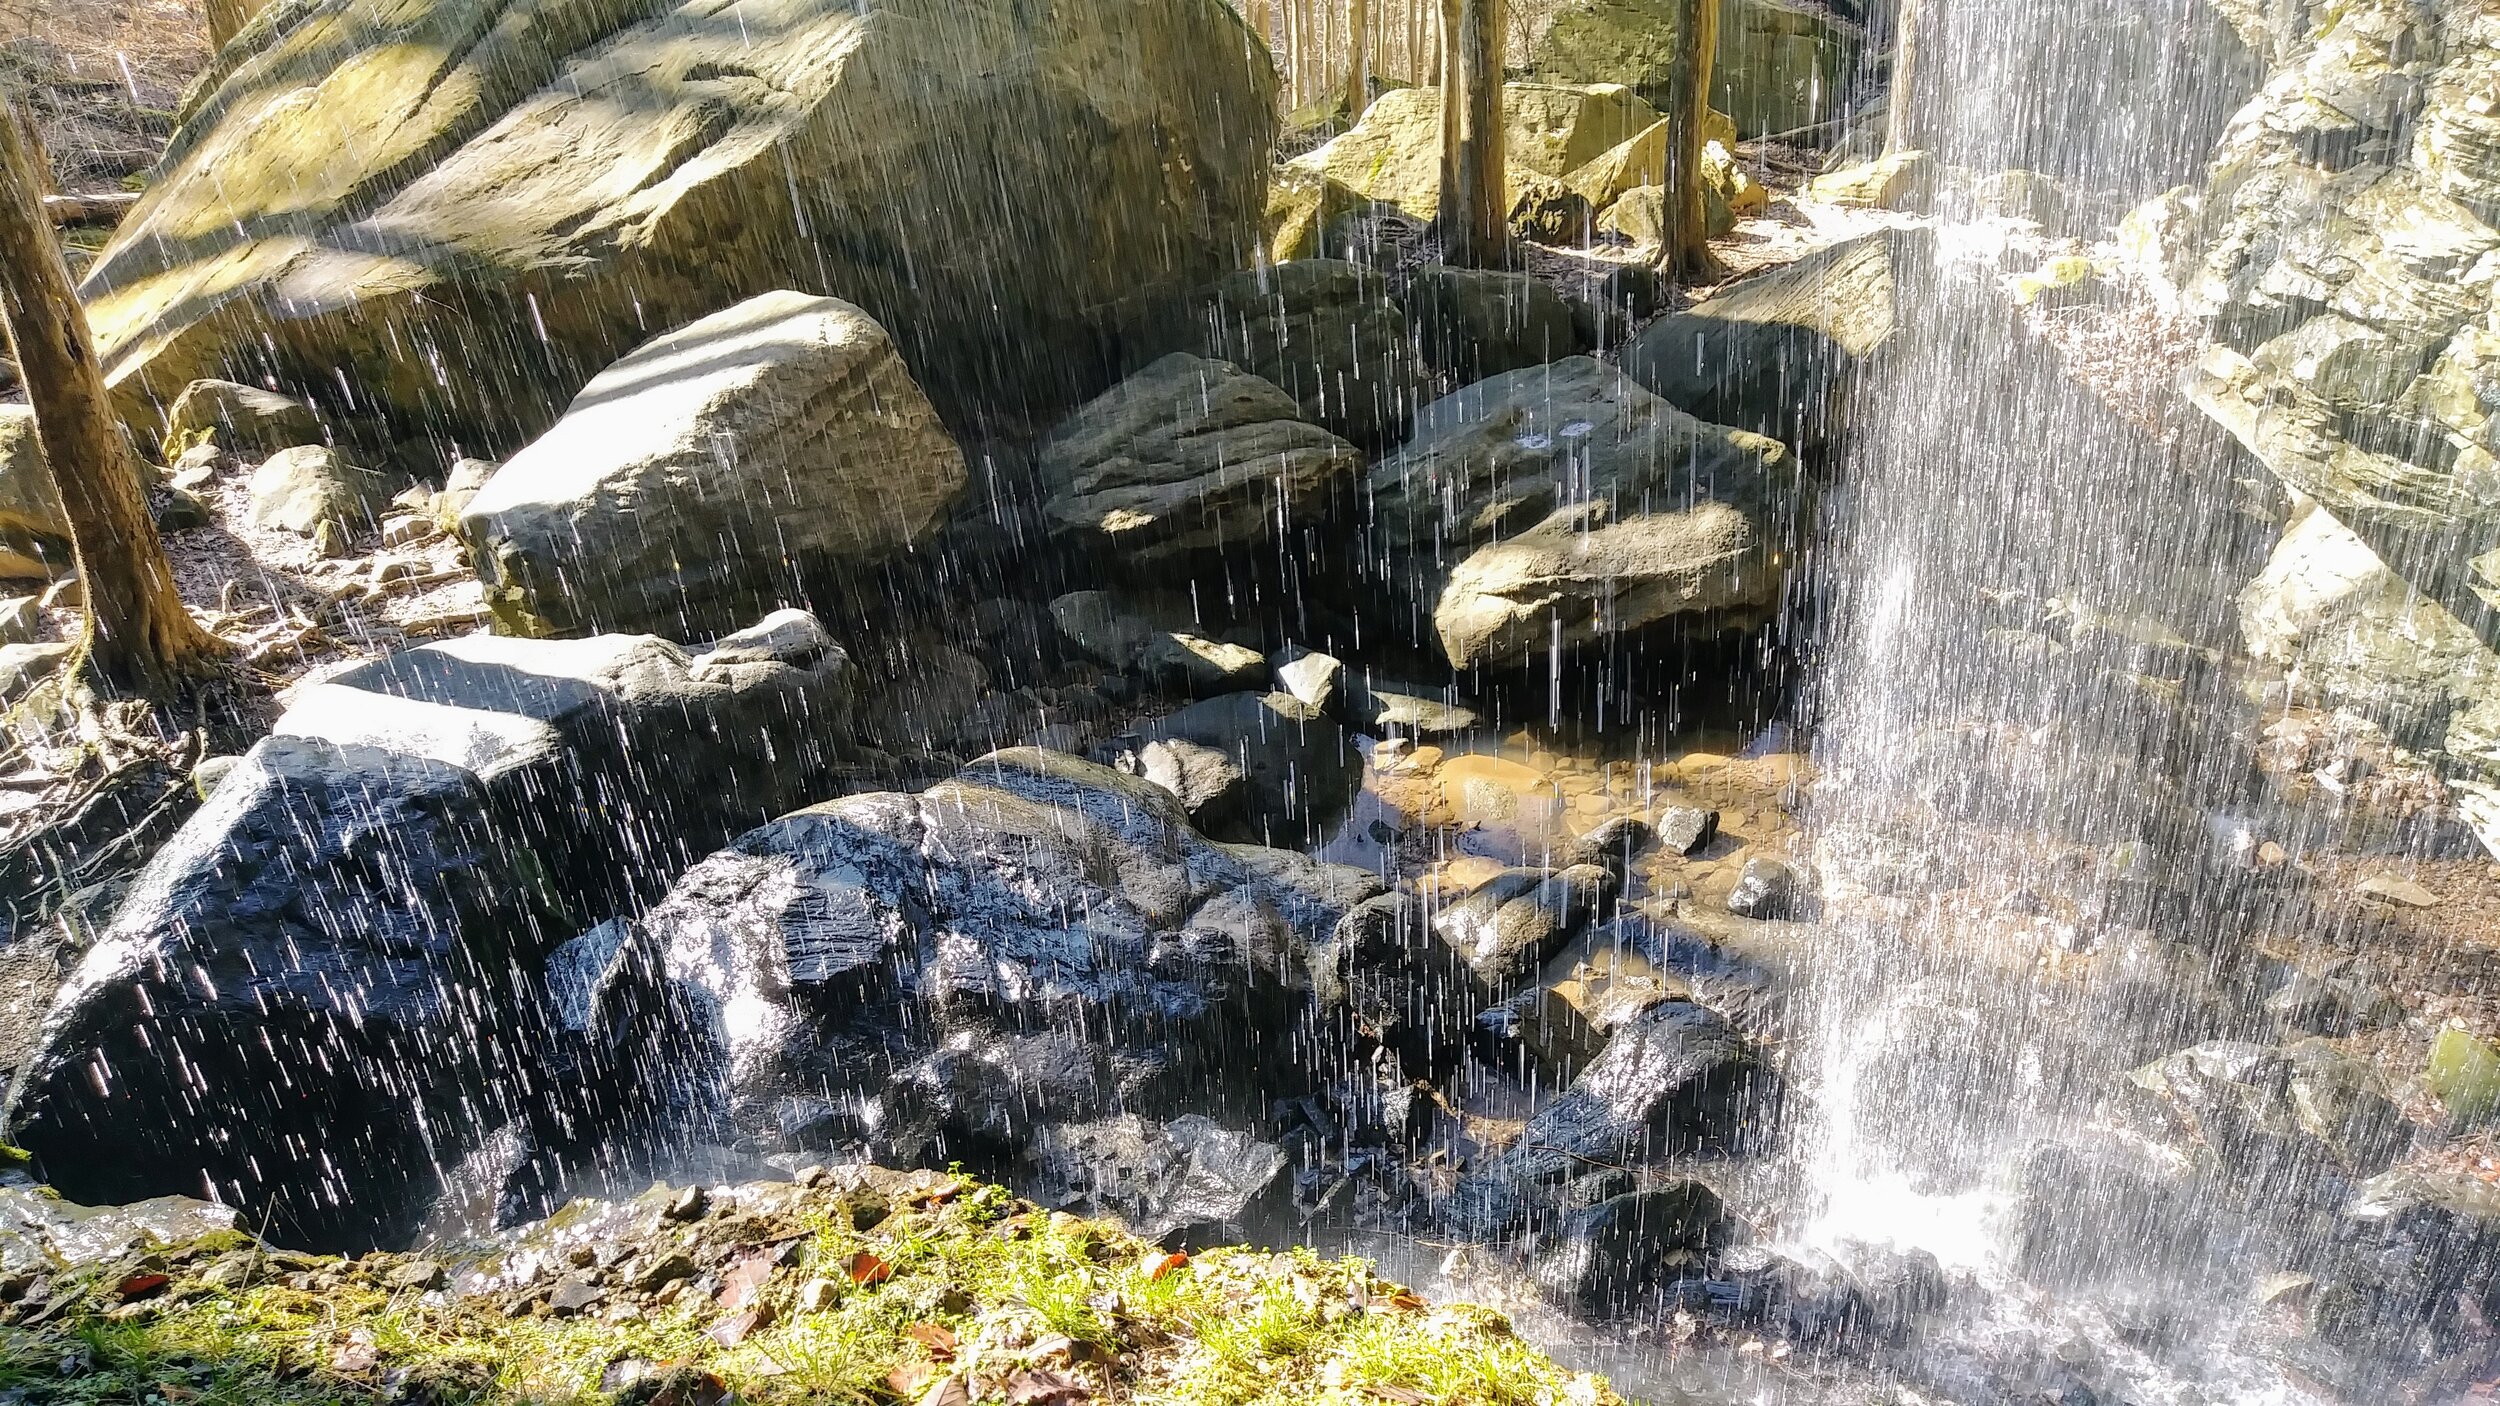 Anglin Falls - Under the Curtain - Kentucky Hiker Project.jpg